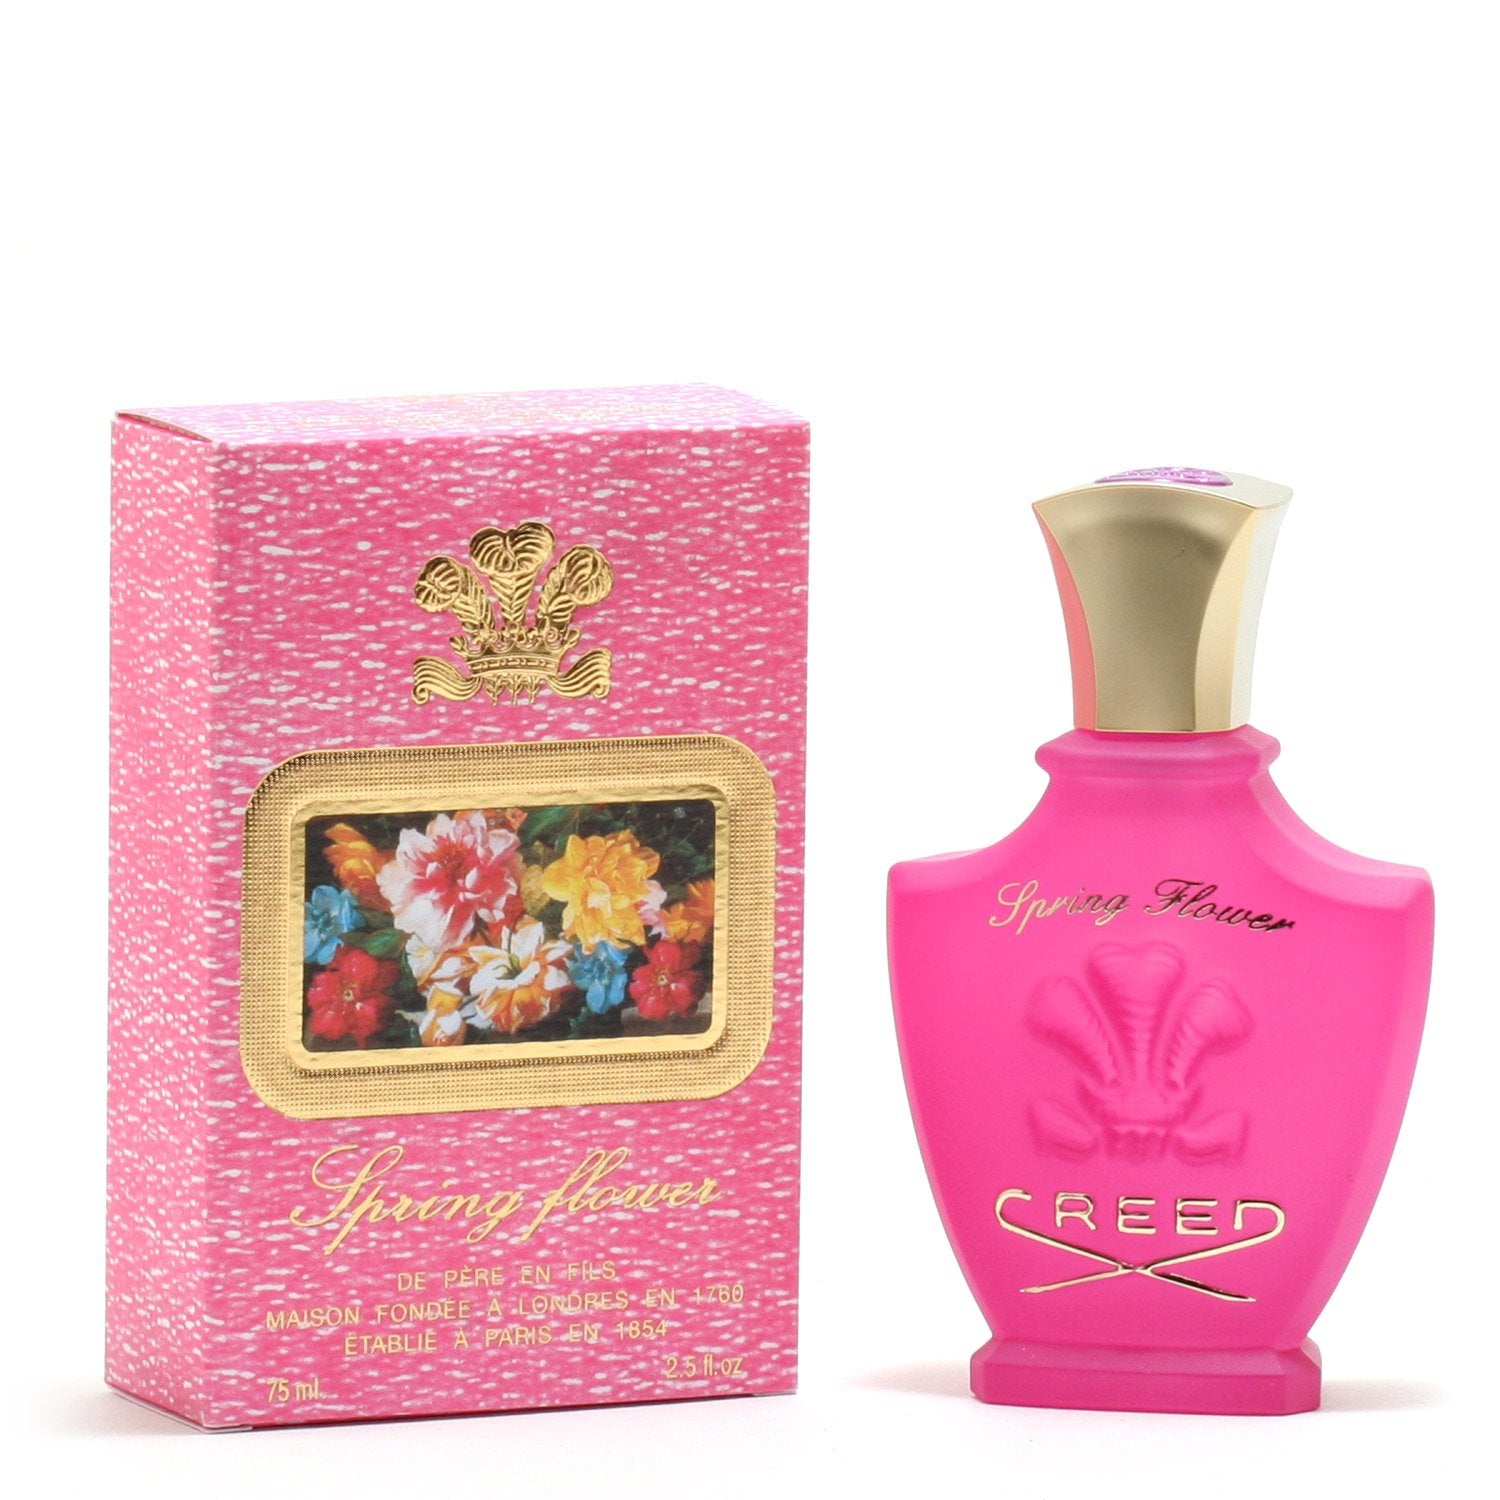 Perfume - CREED SPRING FLOWER FOR WOMEN - EAU DE PARFUM SPRAY, 2.5 OZ